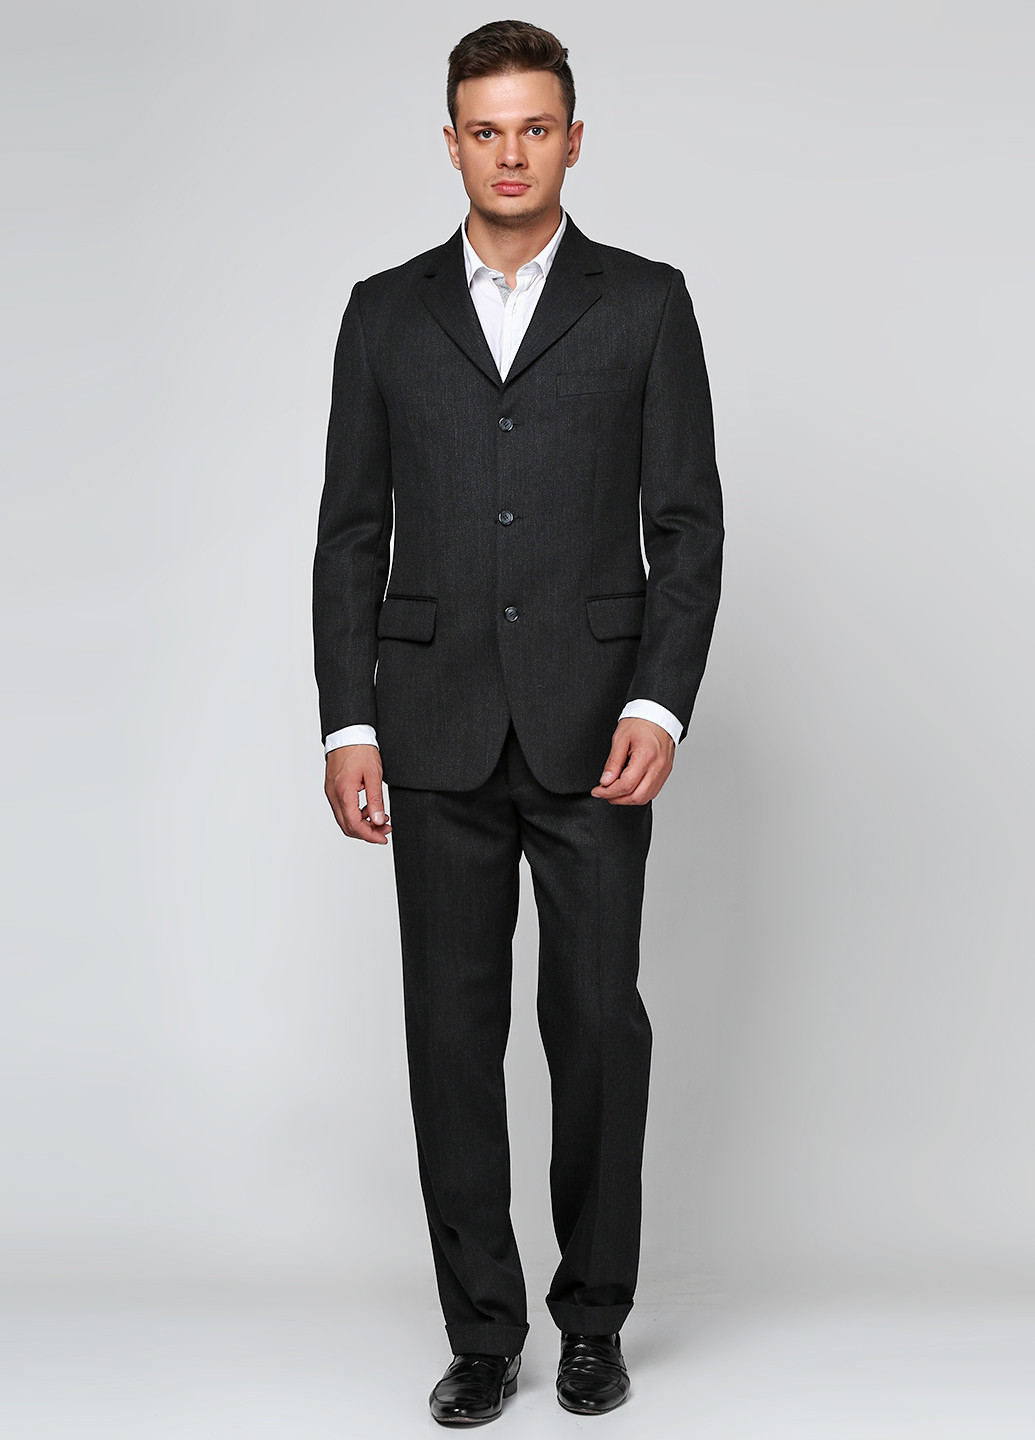 Темно-серый демисезонный костюм (пиджак, брюки) брючный Bocodo